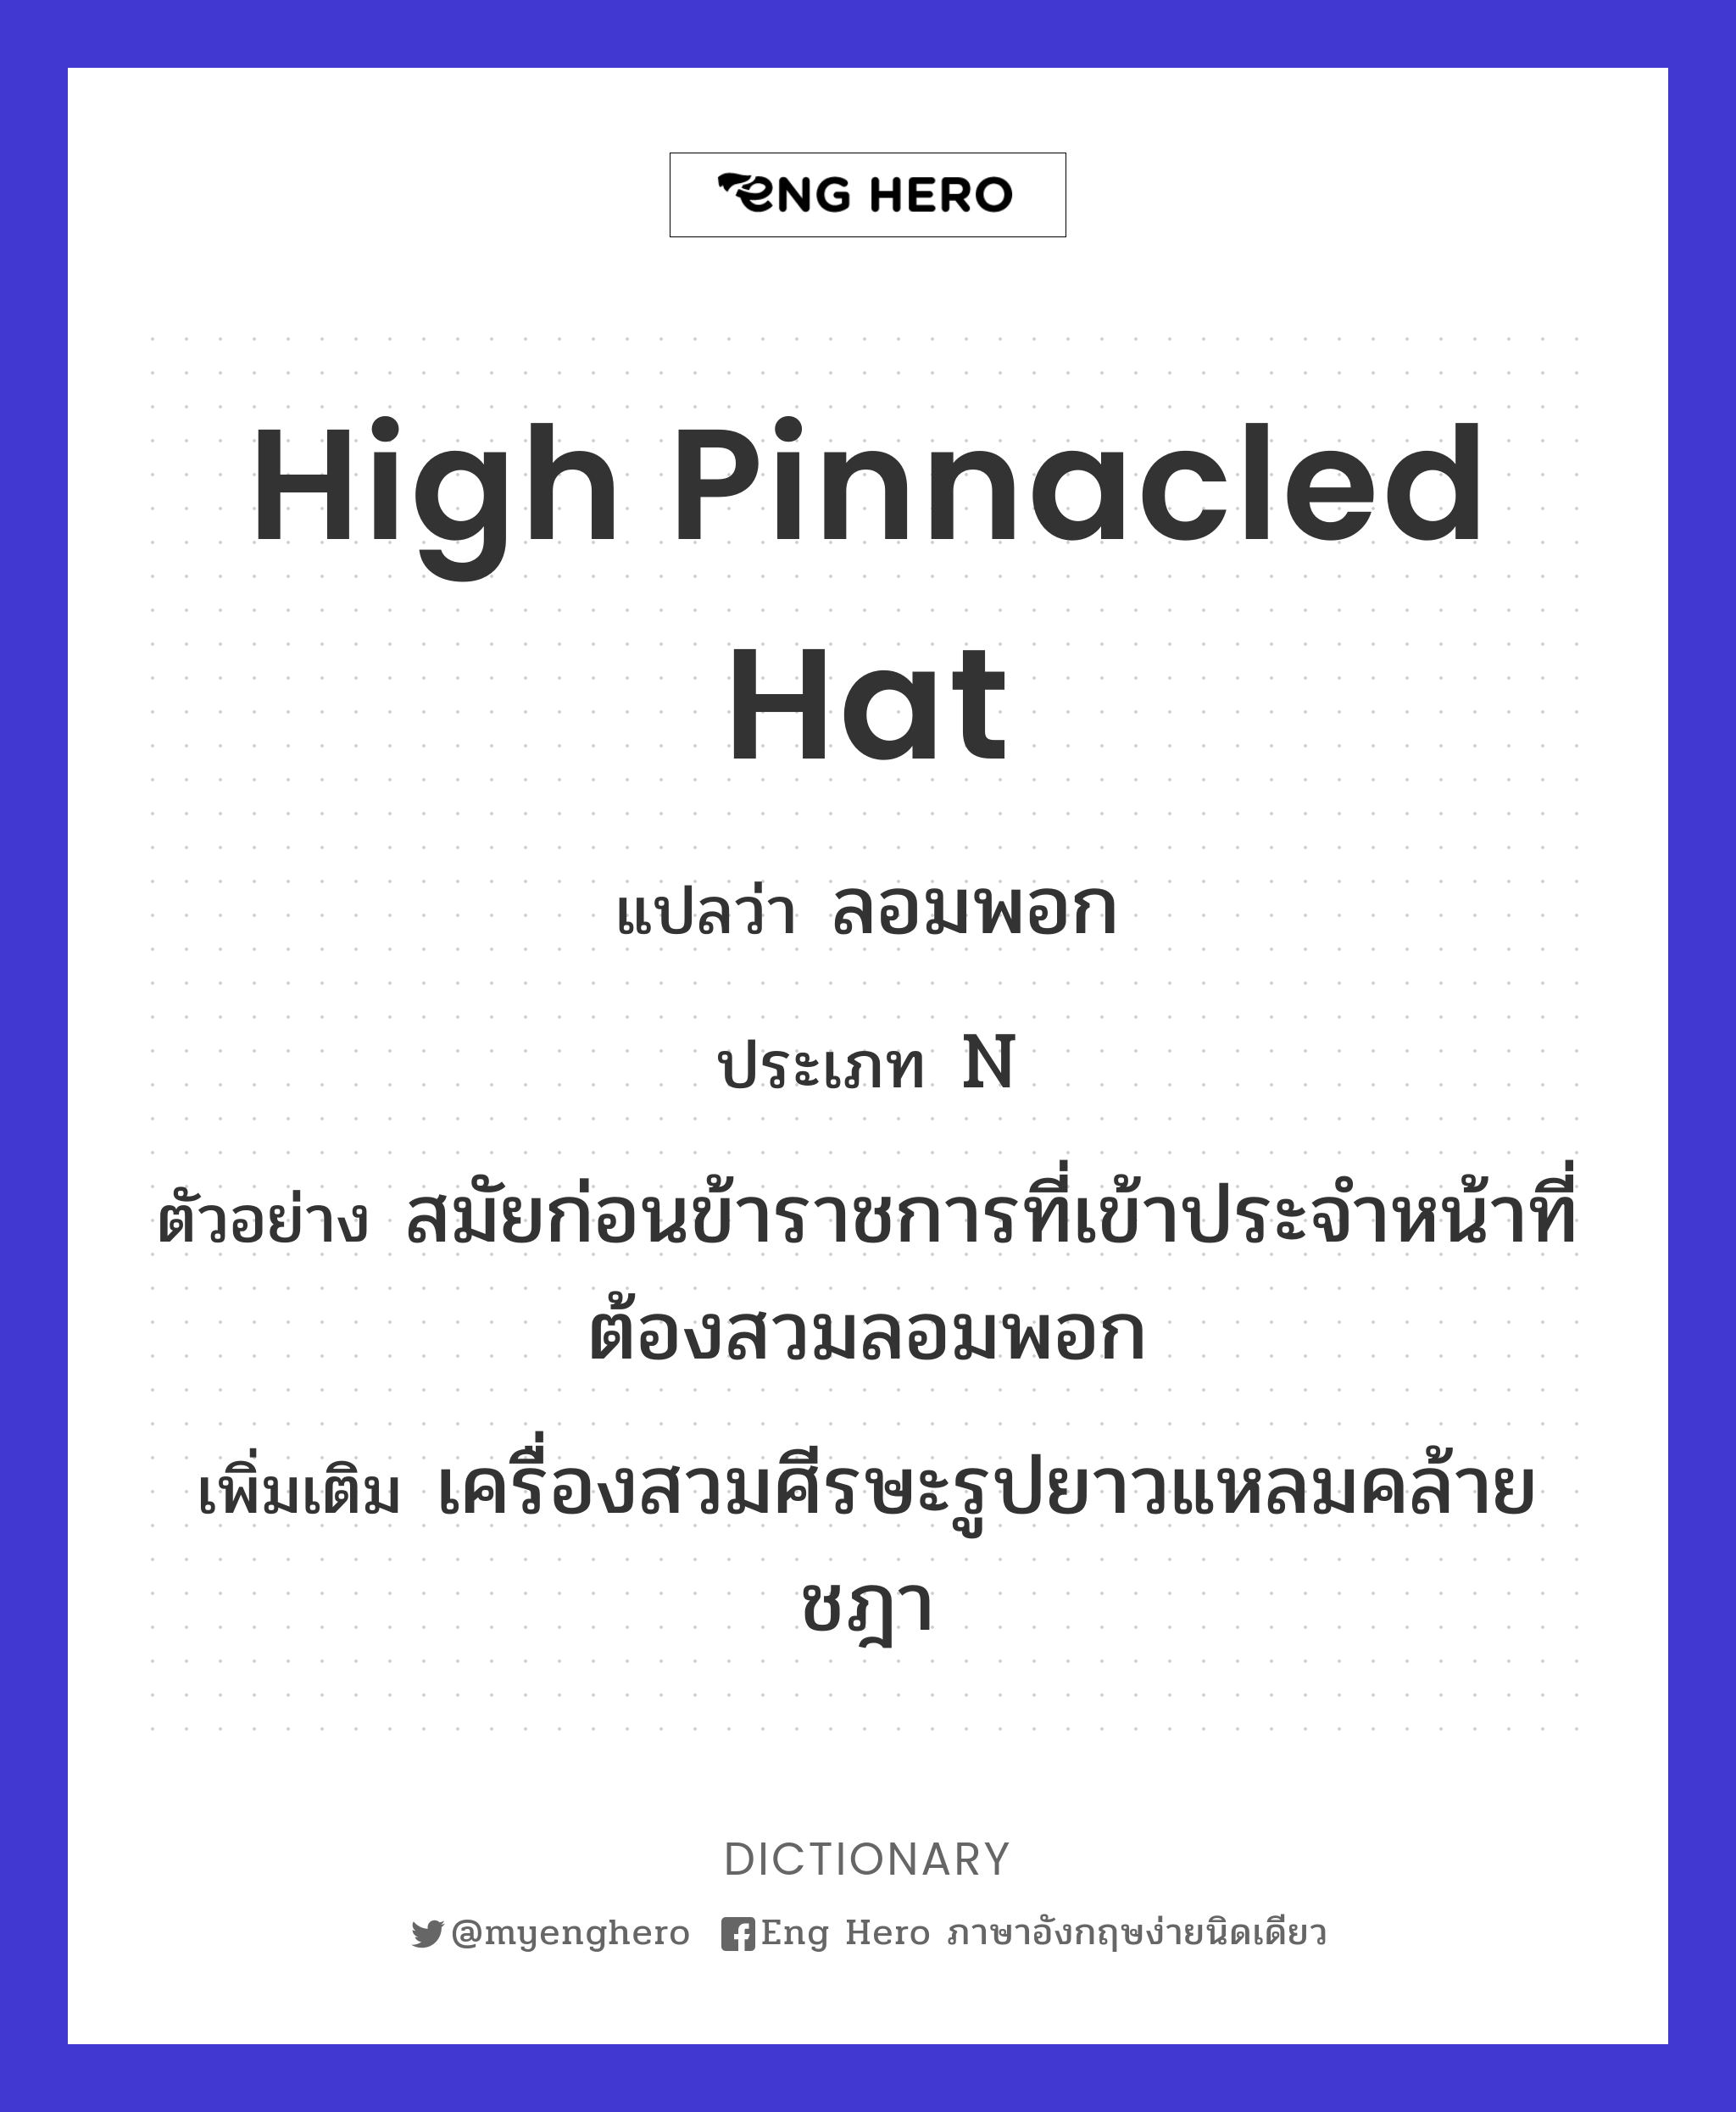 high pinnacled hat